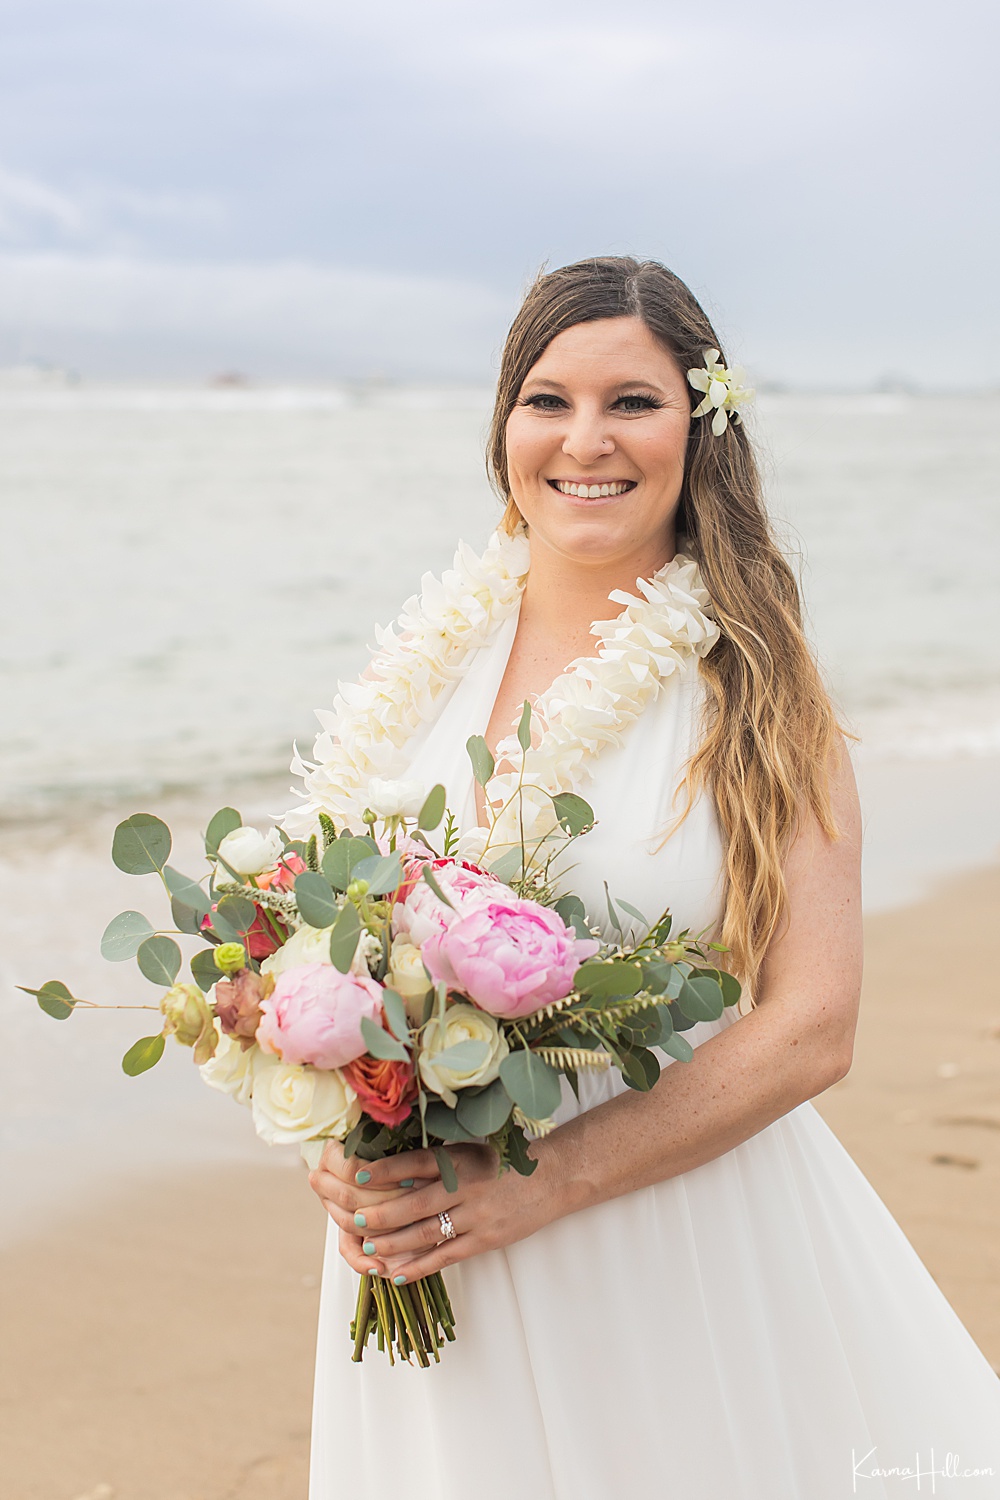 I Love You, Baby! - Erin & Tyler's Beach Wedding on Maui